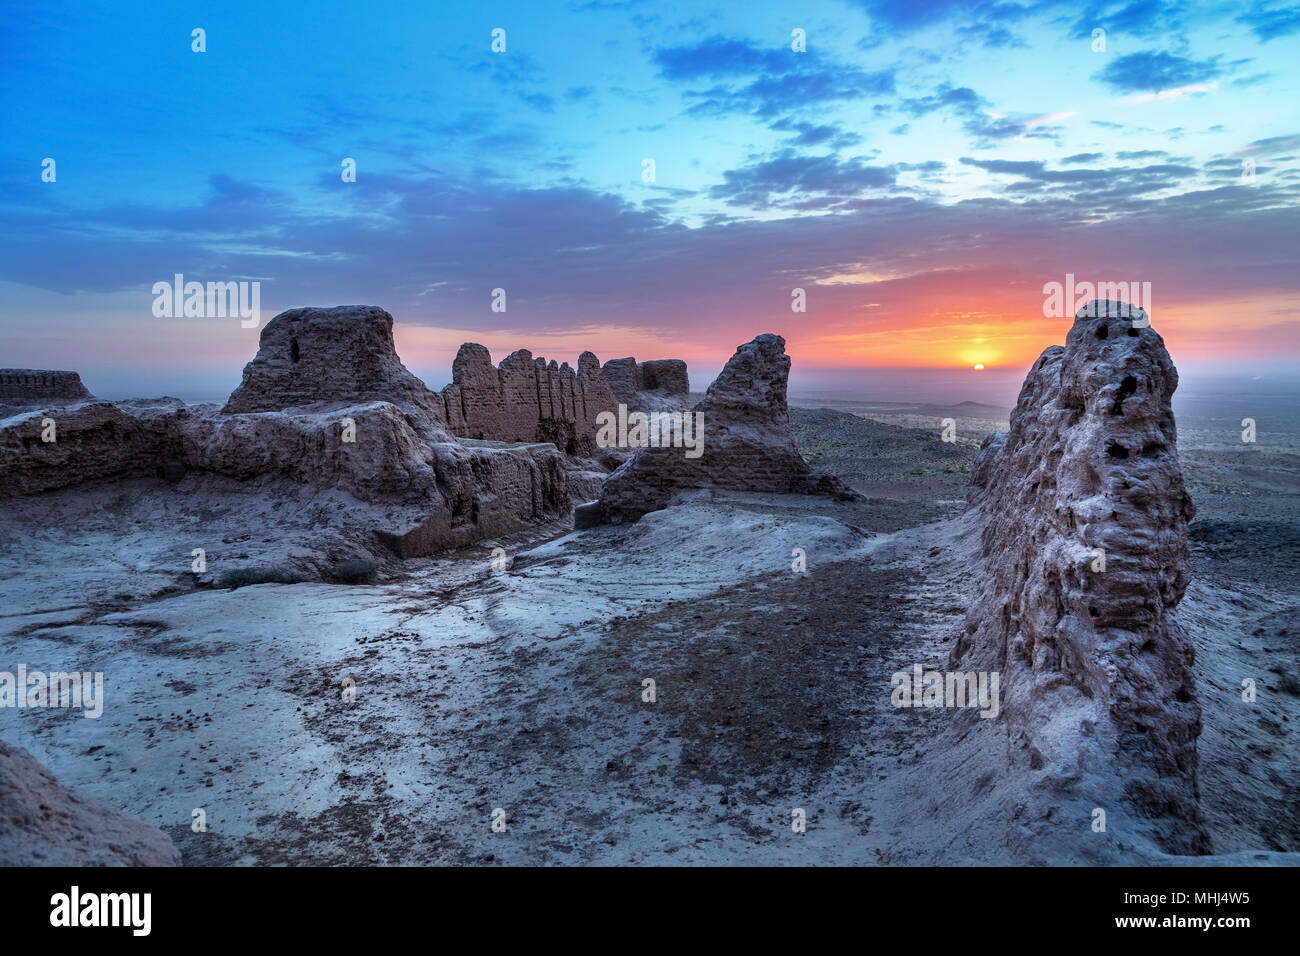 Sonnenaufgang über den verlassenen Ruinen der alten Festung Ayaz Kala in Khorezm Kyzylkum Wüste, Usbekistan Stockfoto